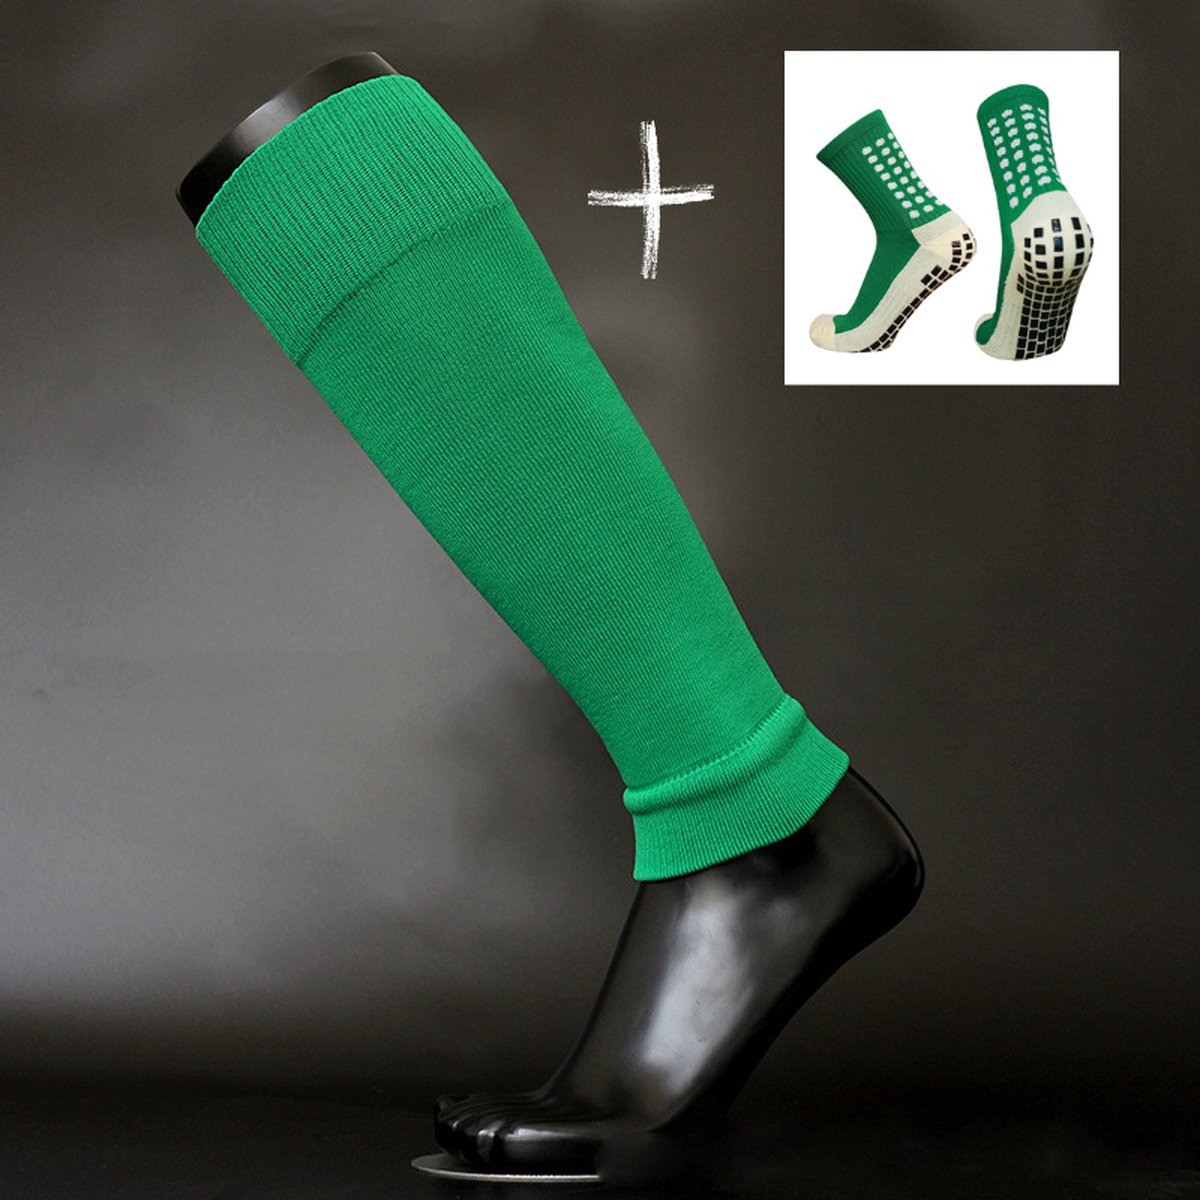 Knaak Voetloze sokken + Gripsokken set - Footless - Antislip - Groen